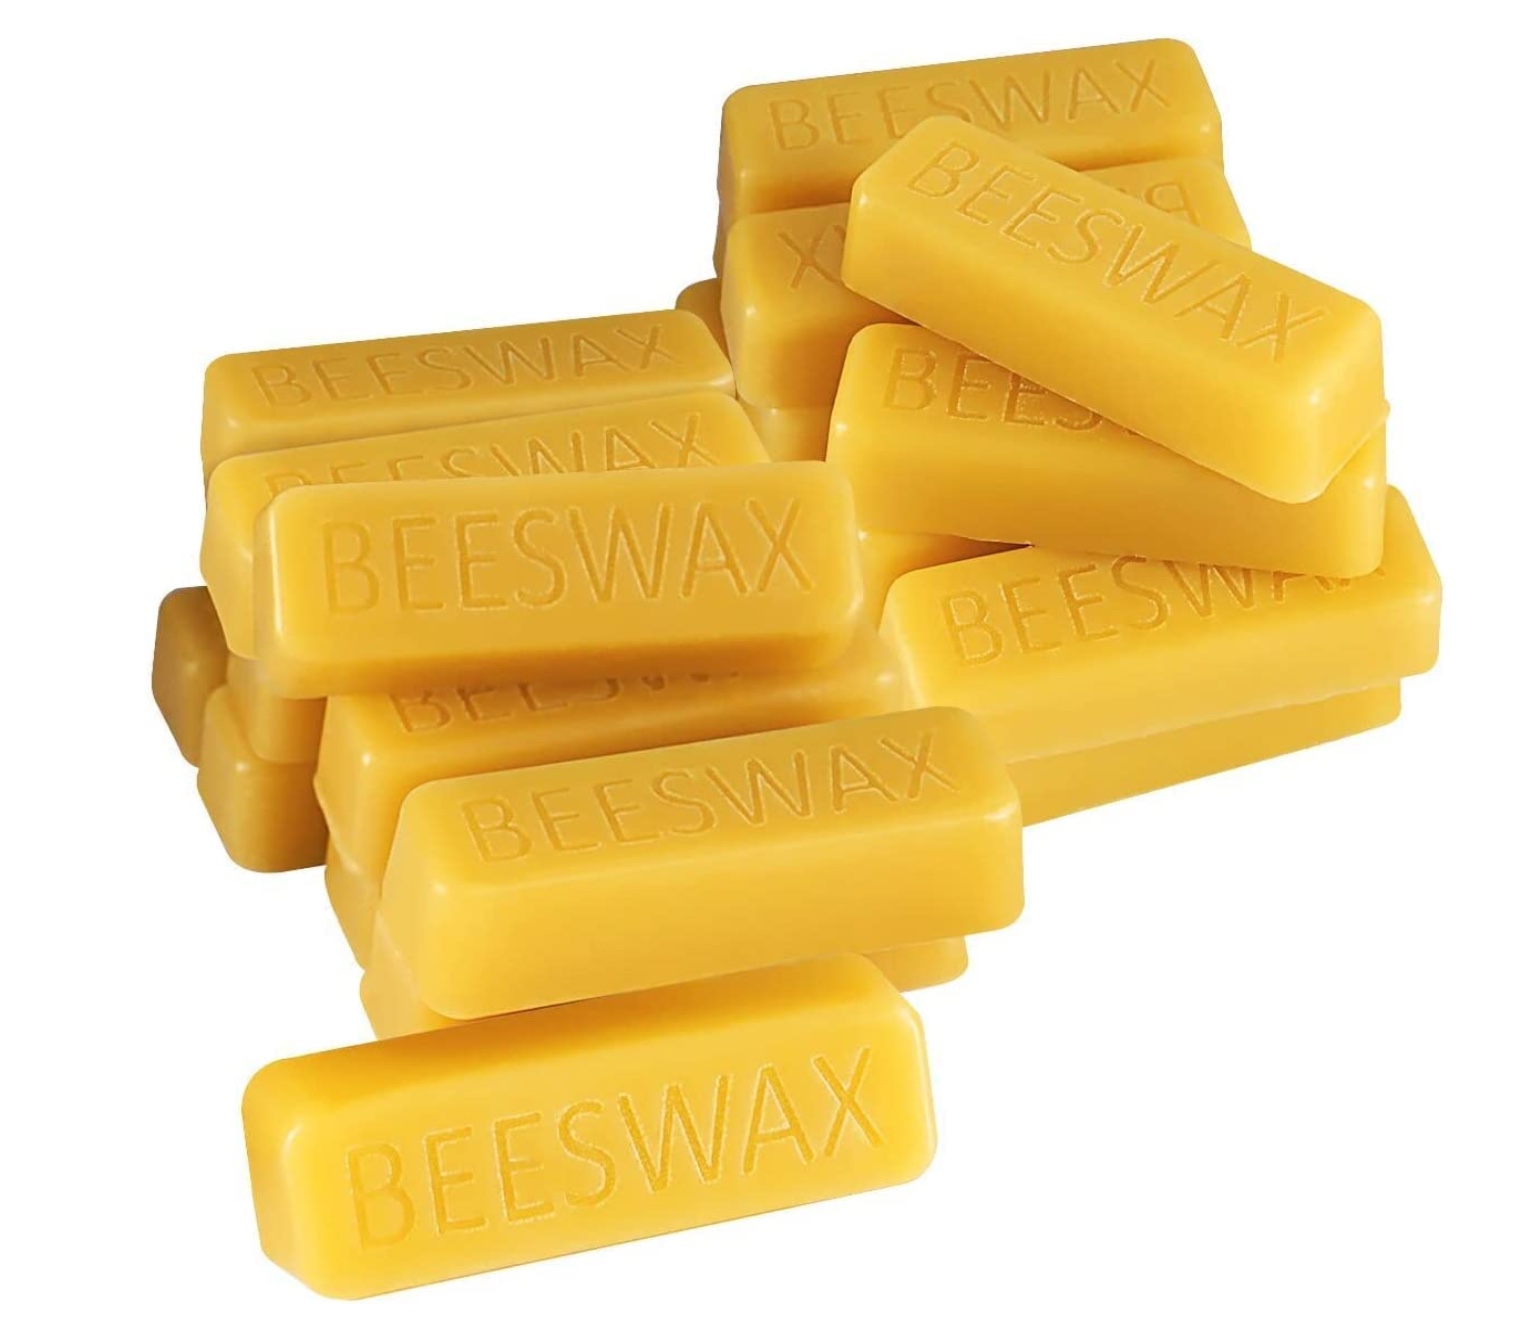 Bee Wax Block